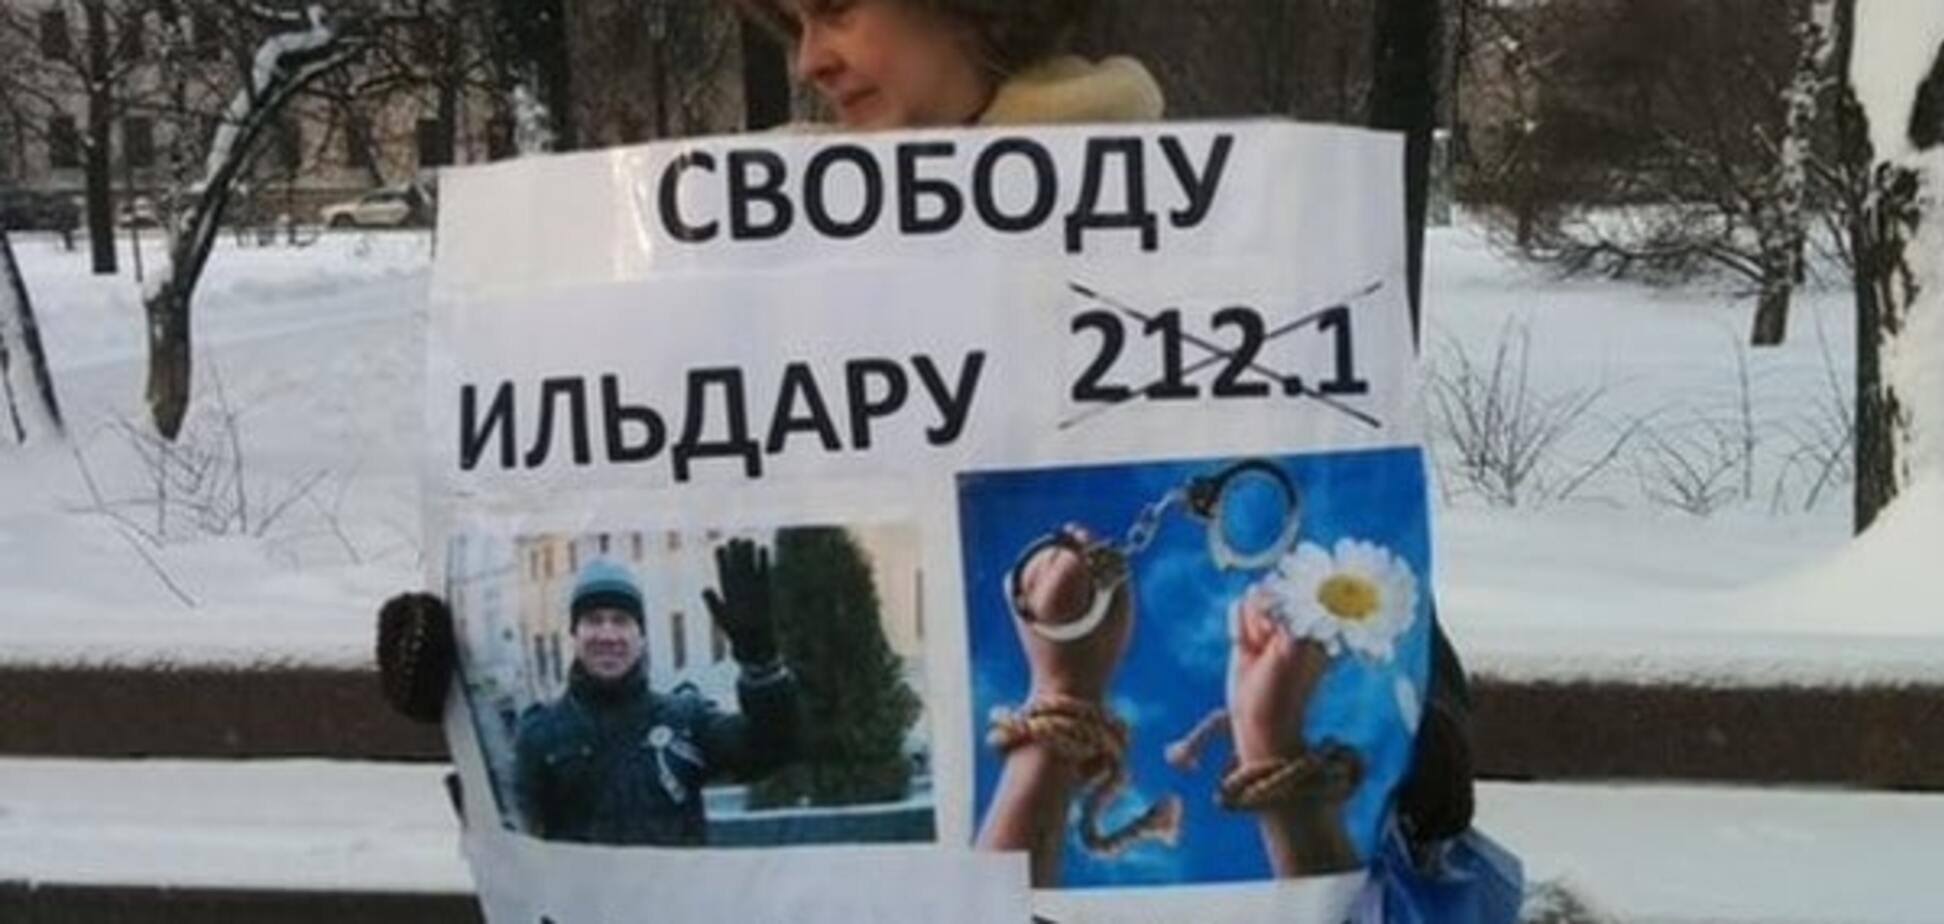 'Путин, уйми своих опричников': москвичи вышли на протест. Фоторепортаж